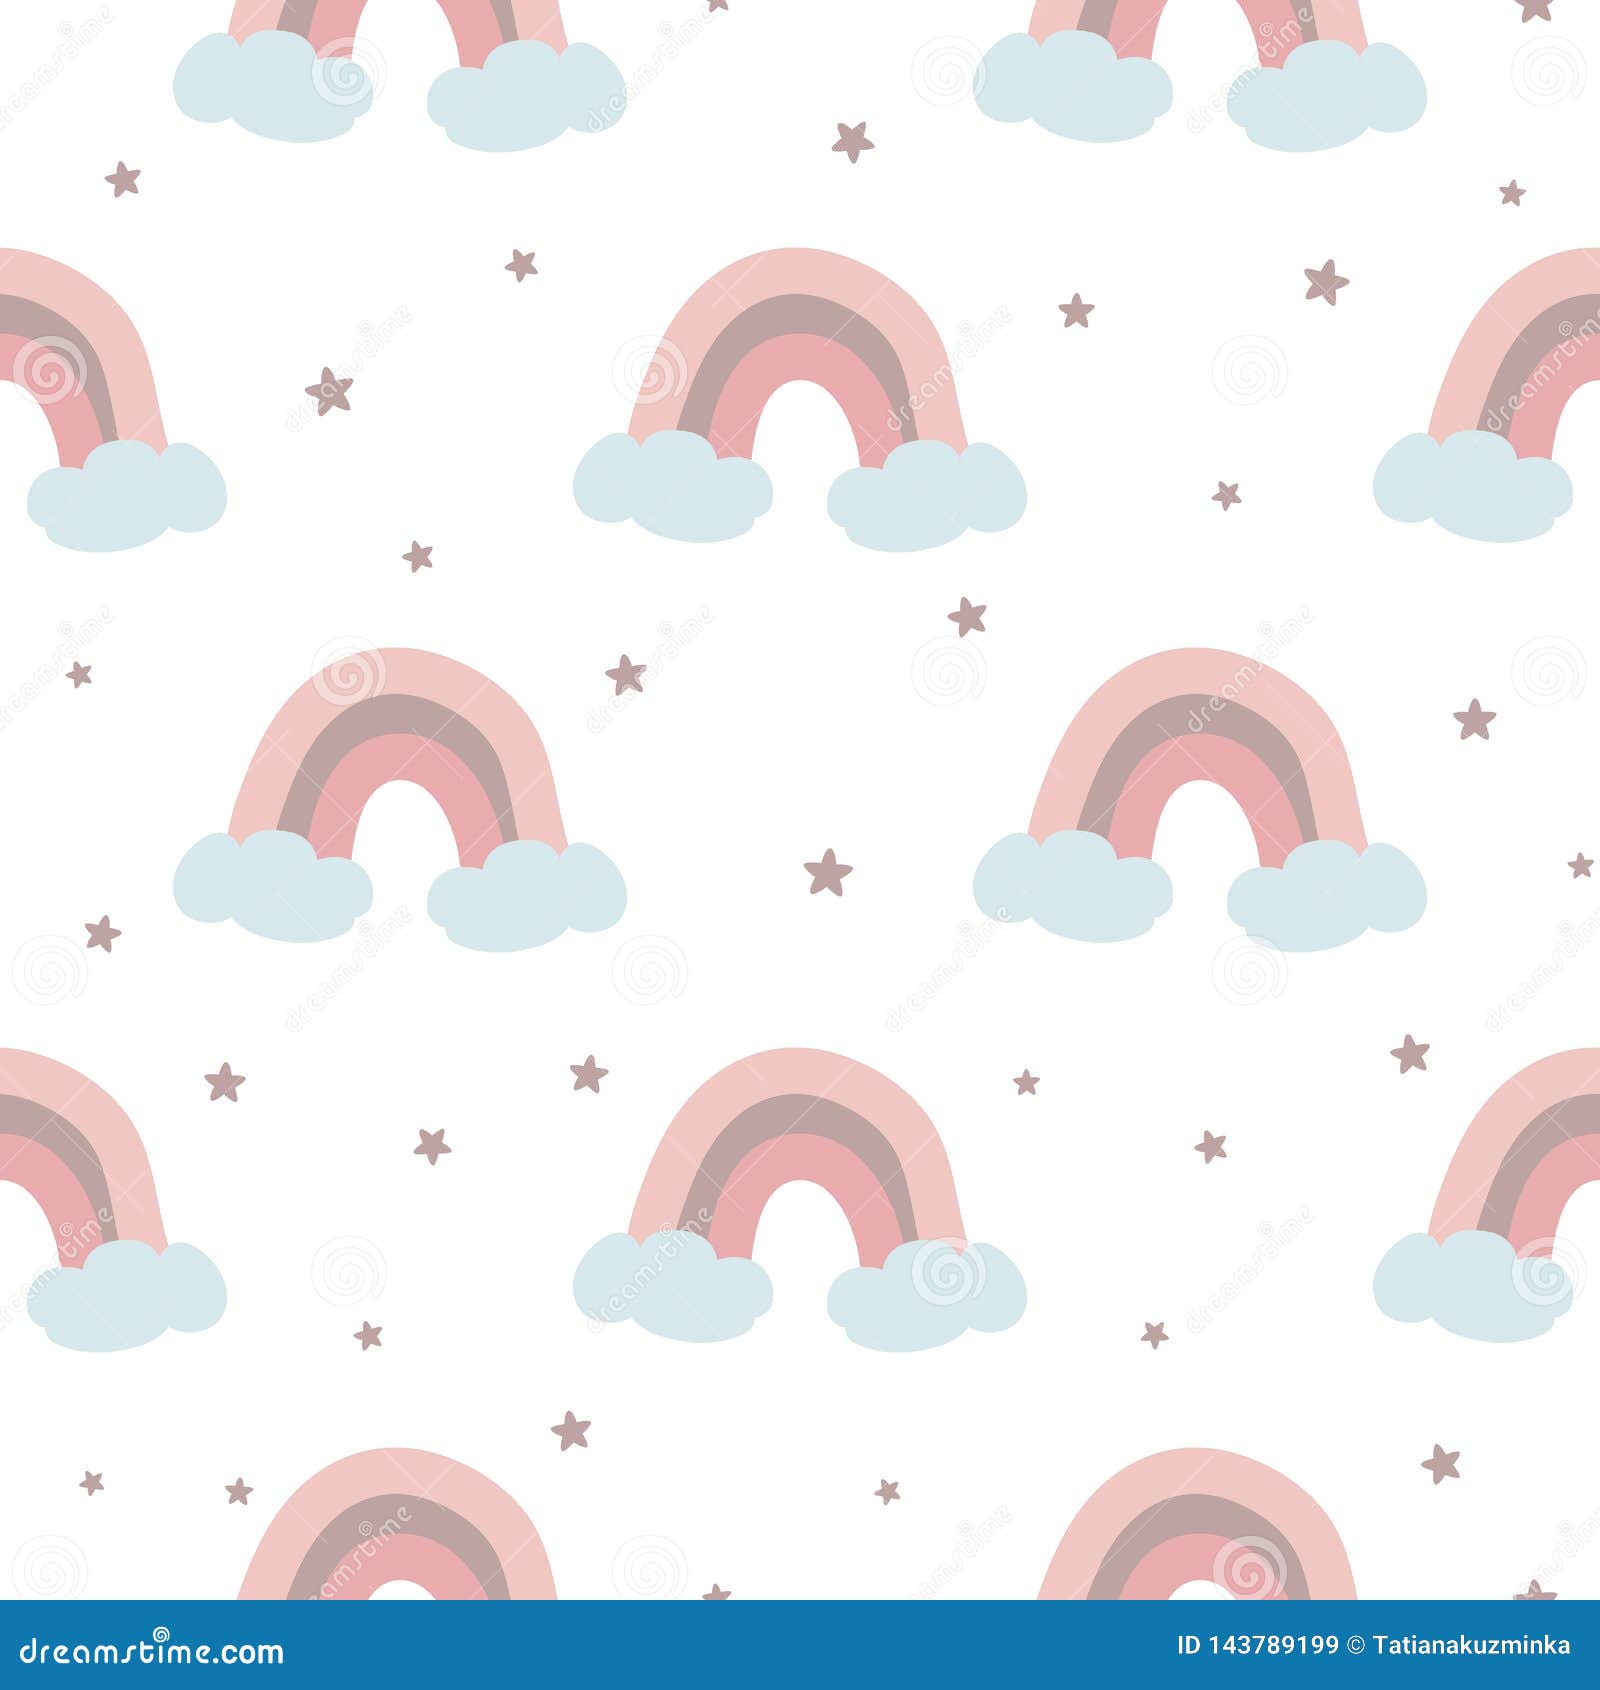 Khung hình mẫu nền vector bé gái hồng với tia cầu vồng và mây sẽ đưa bạn đến những giấc mơ kỳ diệu. Hãy truy cập ngay để được chiêm ngưỡng những tác phẩm tuyệt vời này!